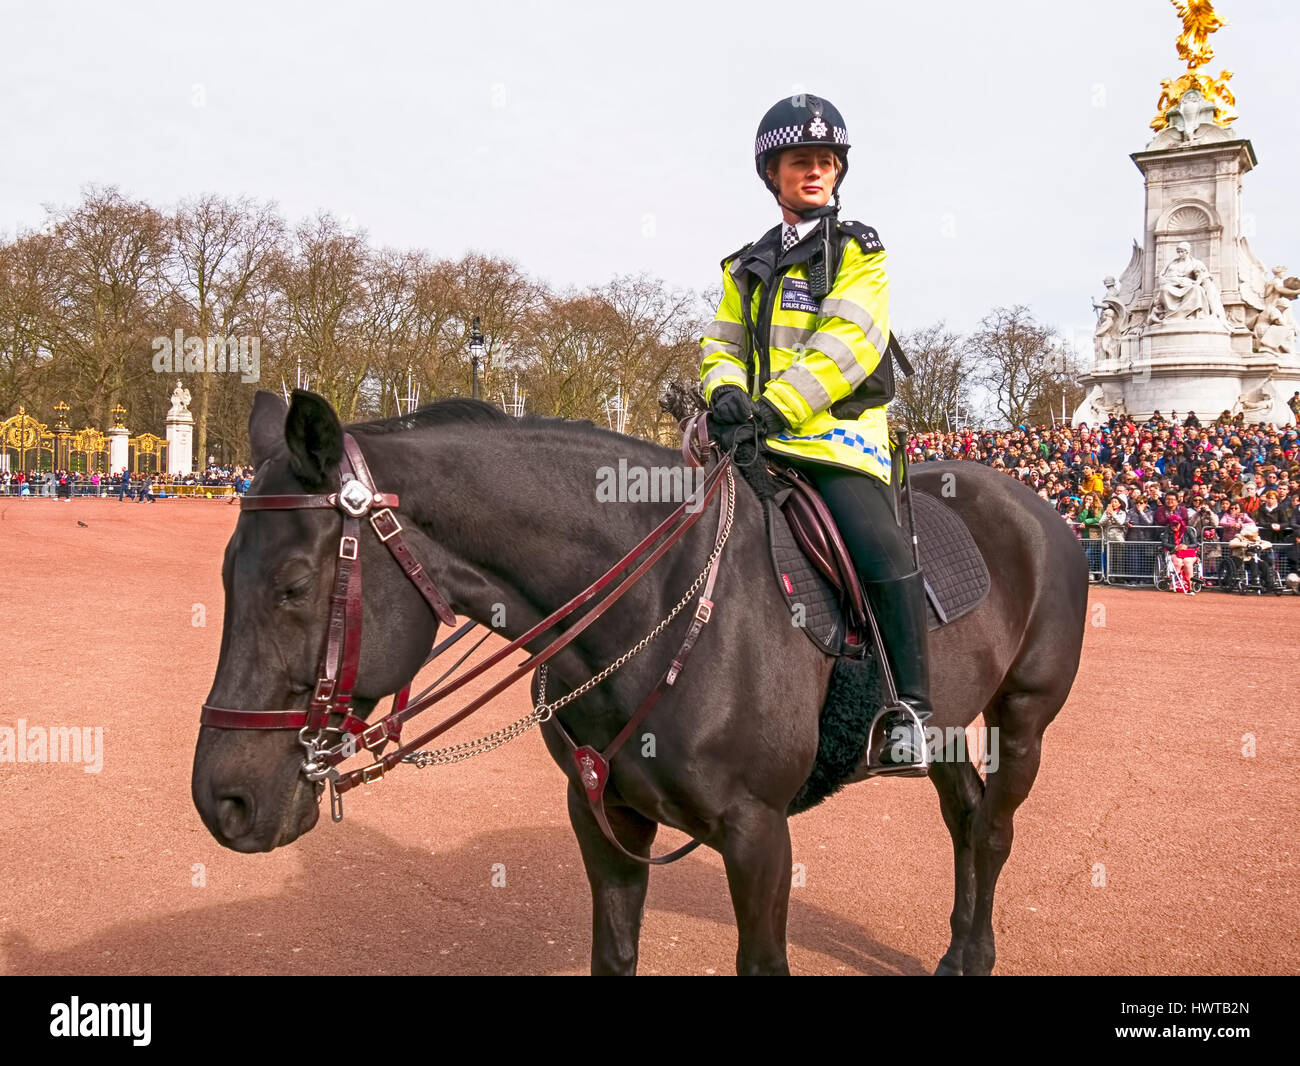 La police de Londres à cheval au palais de Buckingham Banque D'Images